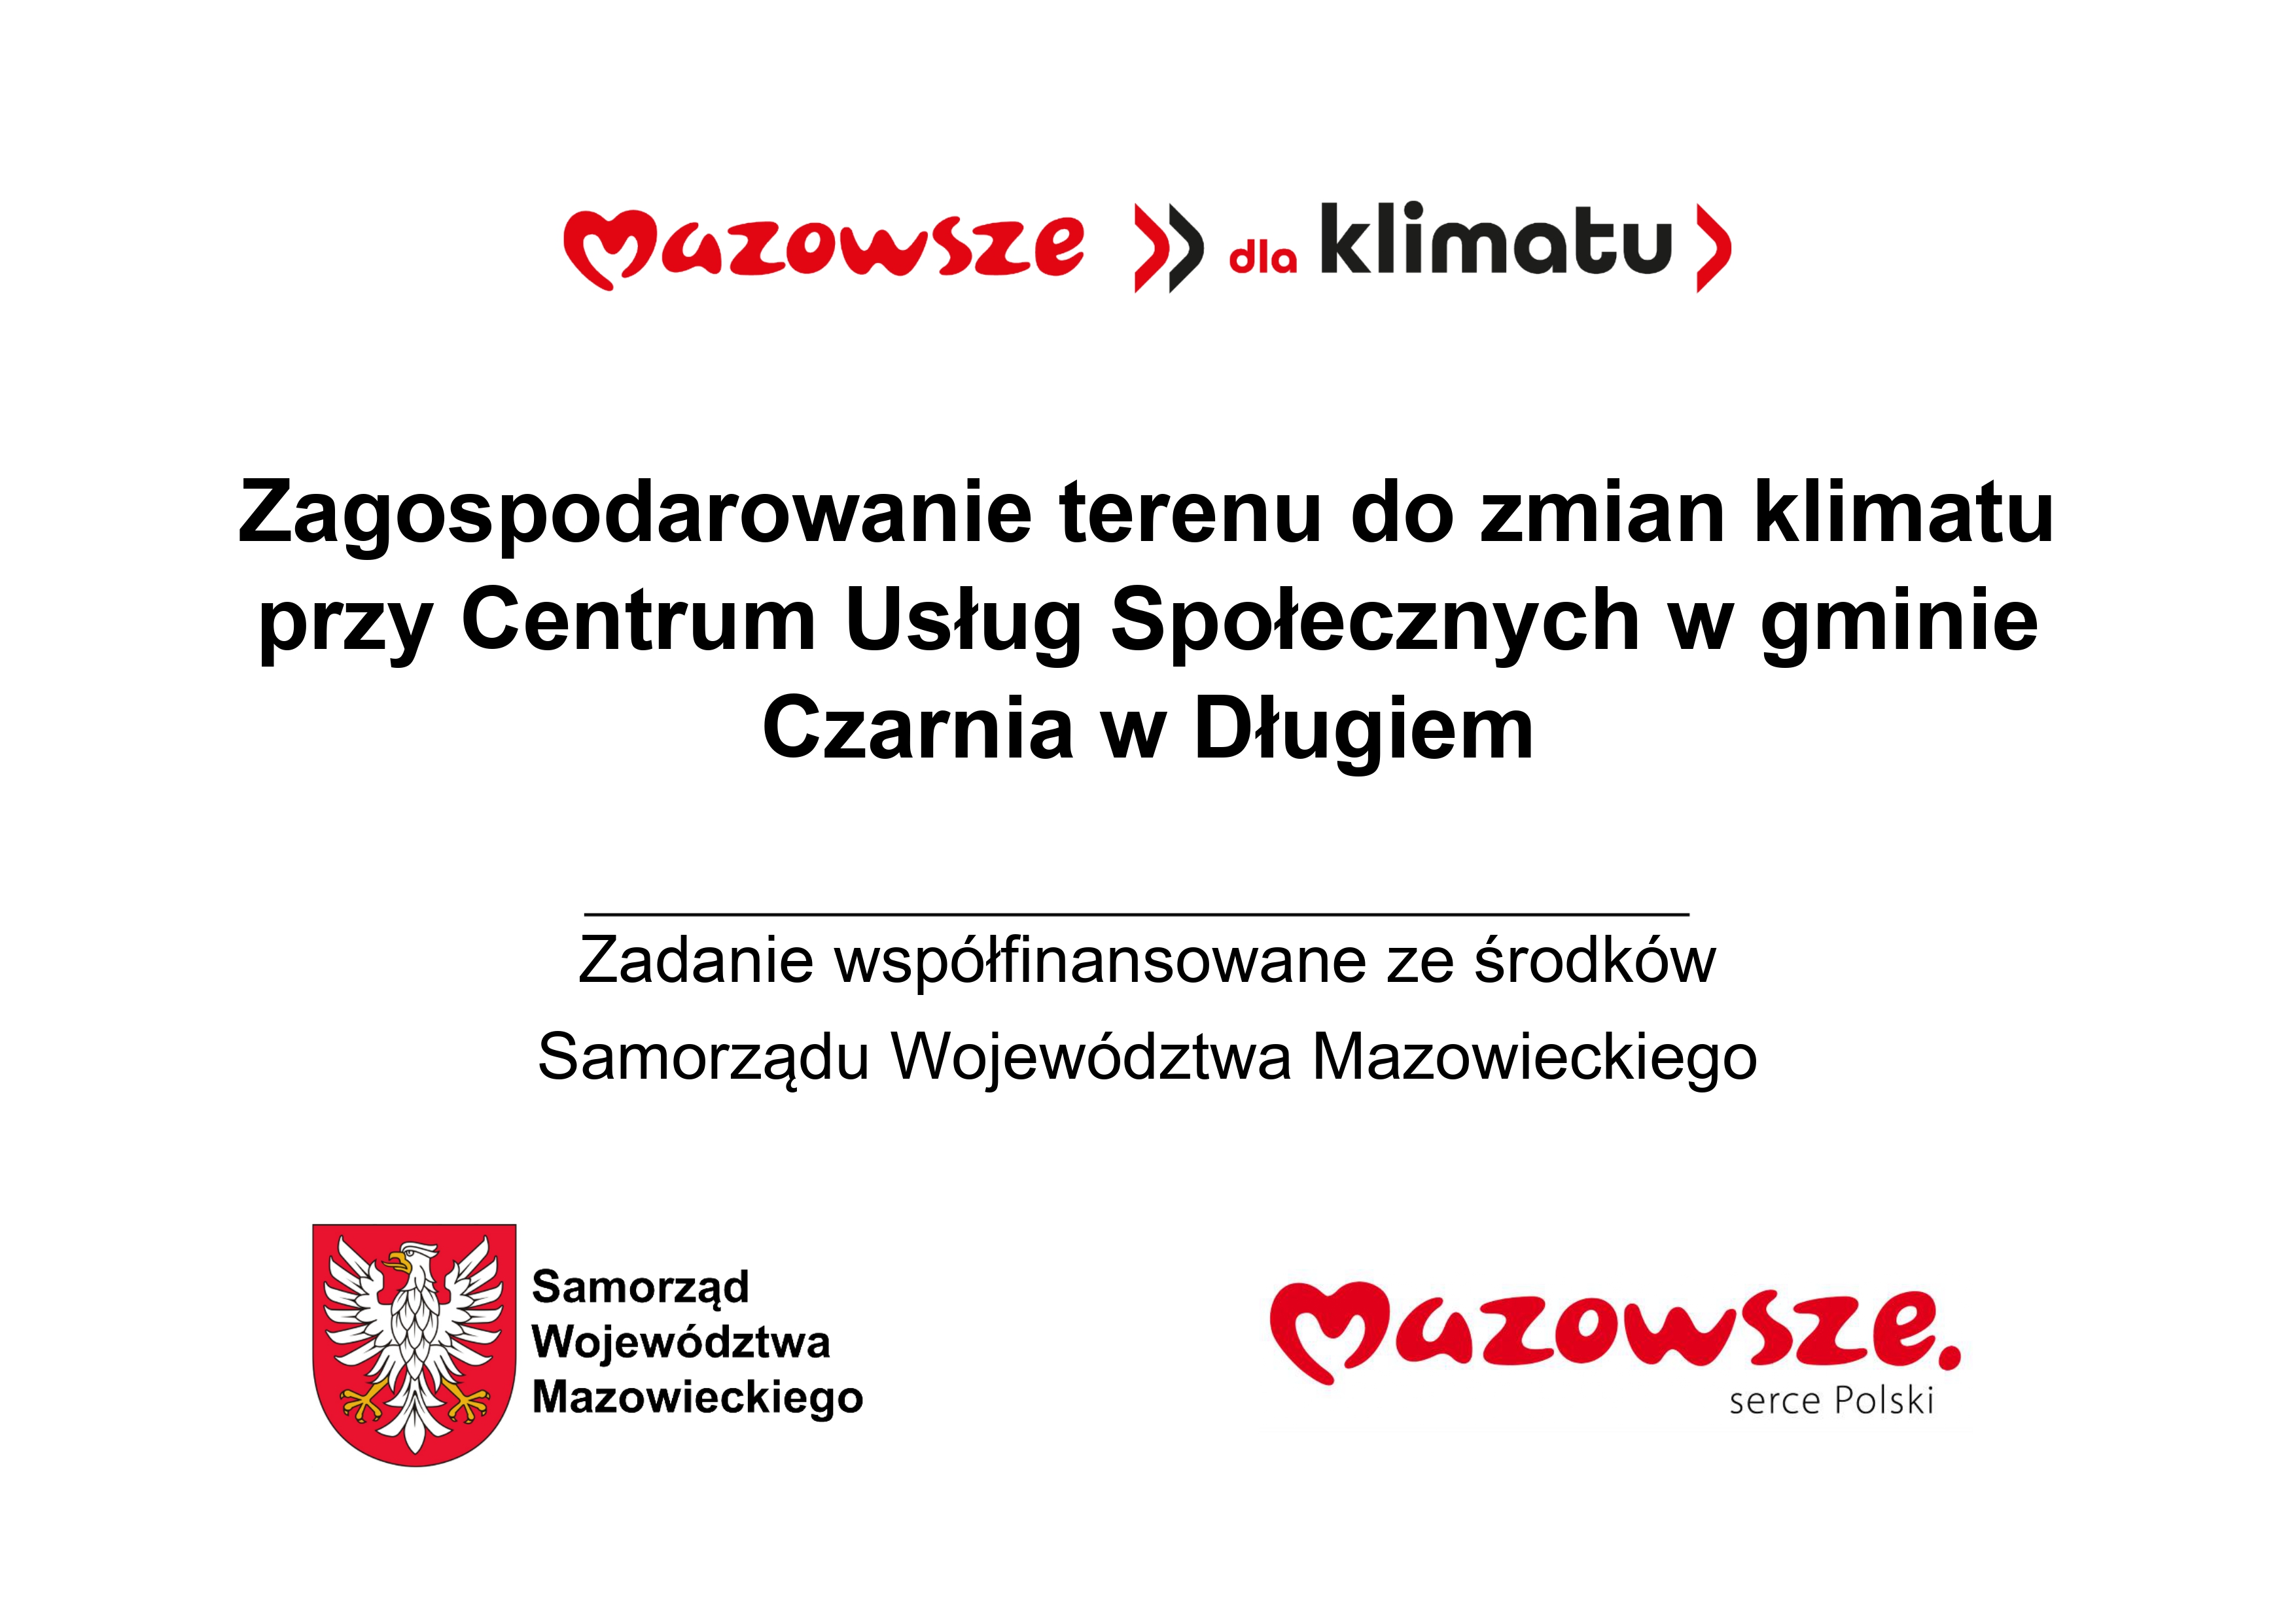 mazowsze_dla_klimatu__page-0001.jpg (916 KB)